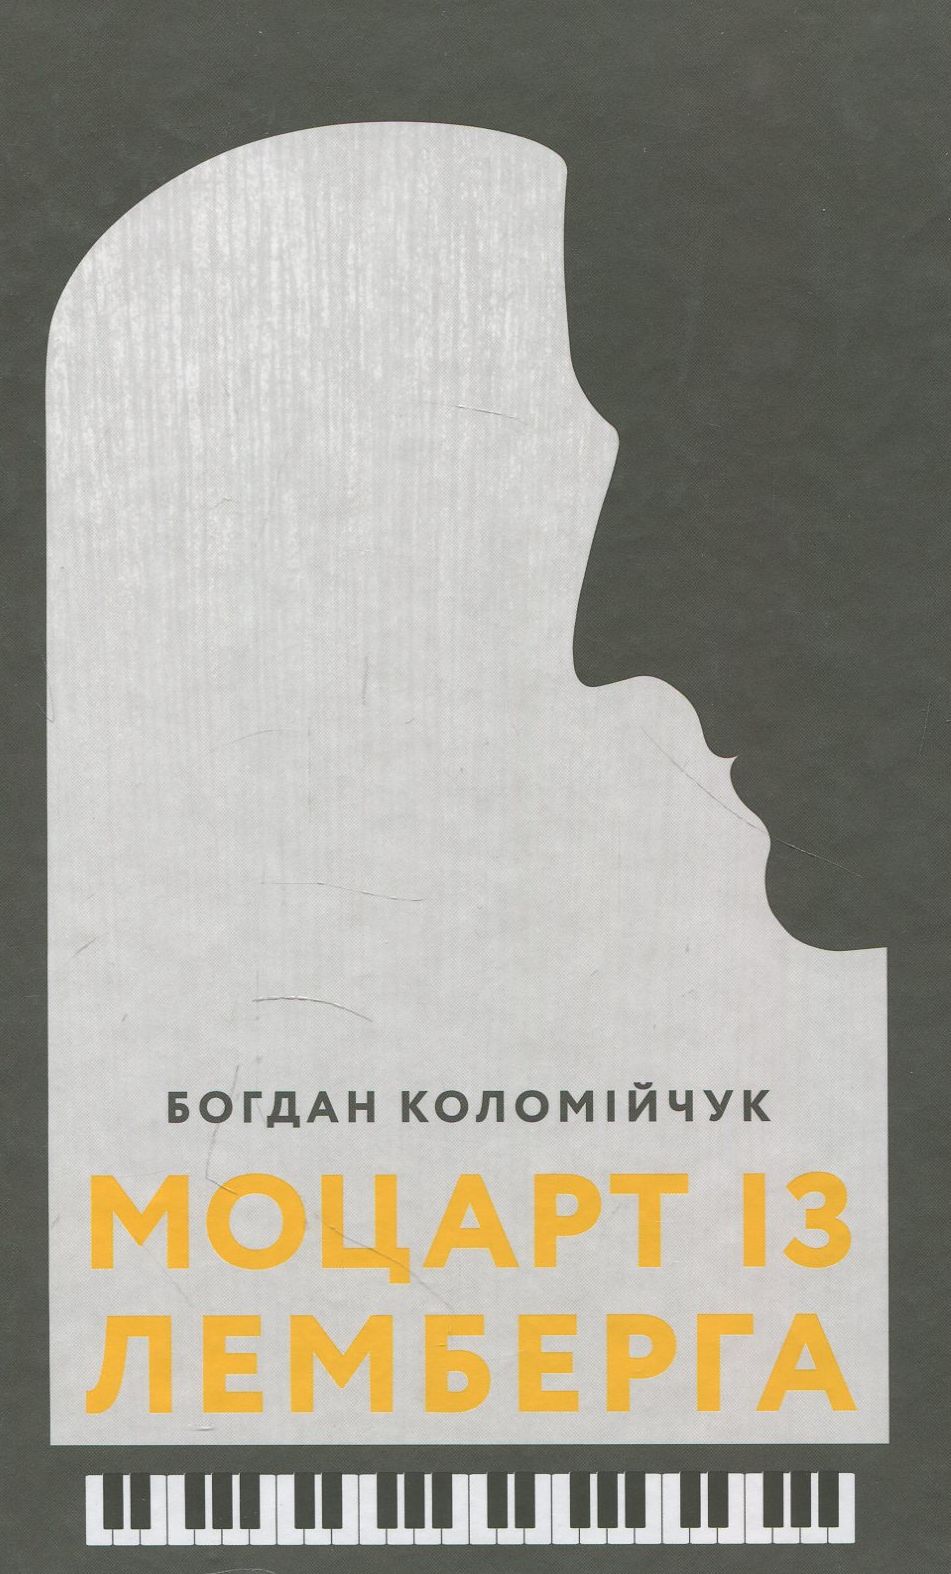 Де блукає тінь великого Моцарта у романі Богдана Коломійчука